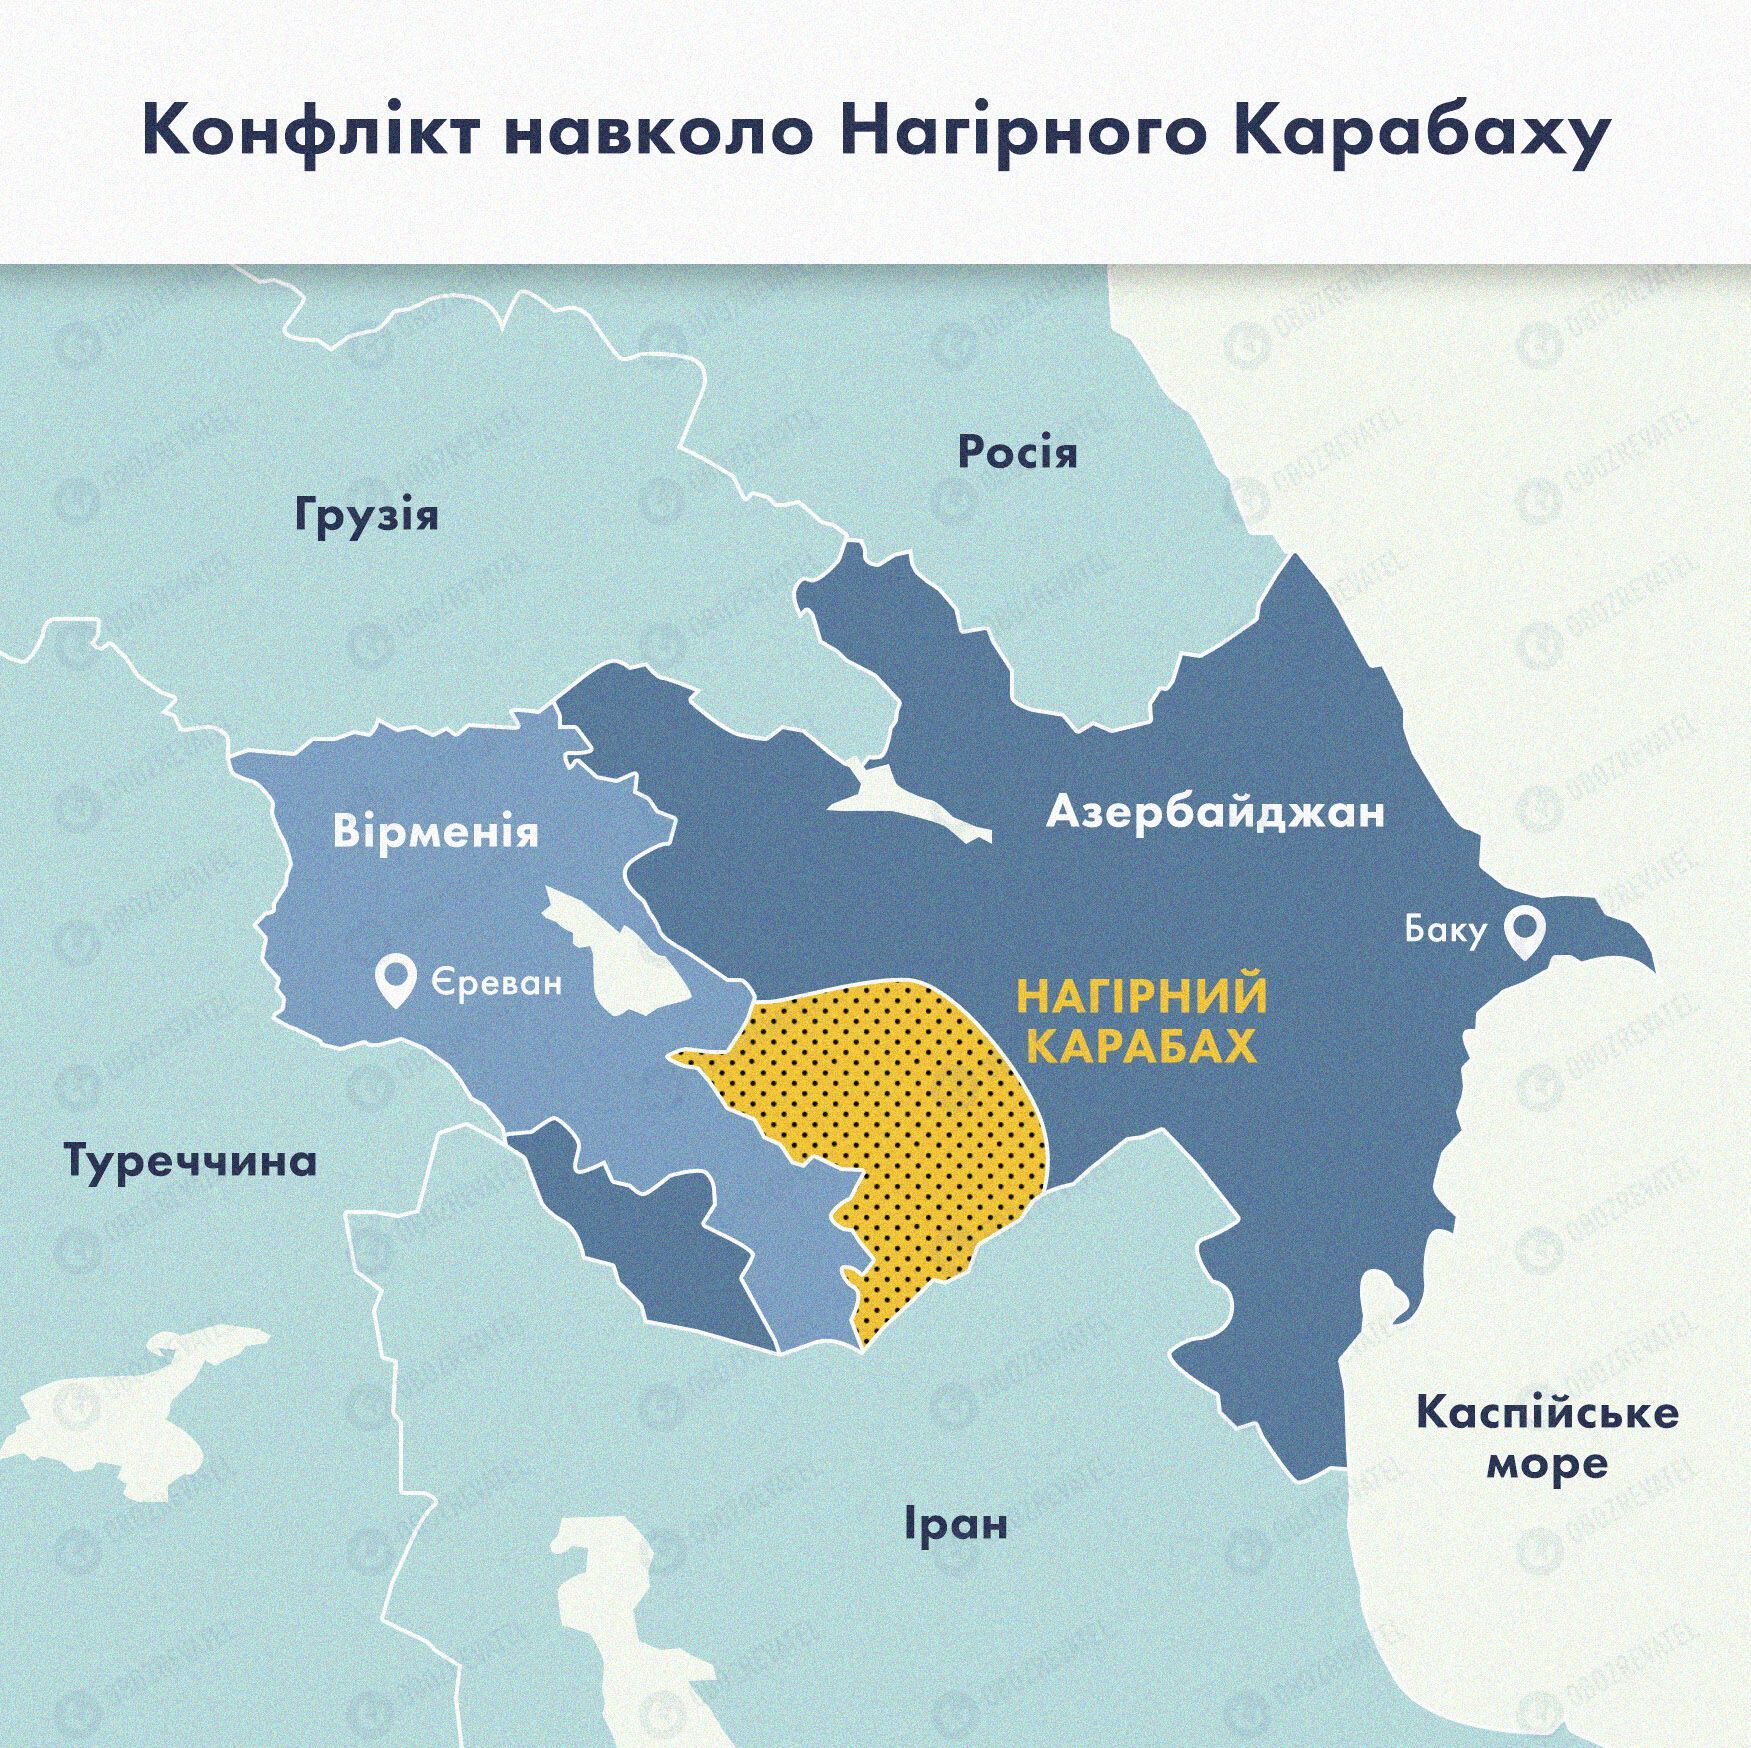 Карта конфлікту в Нагірному Карабасі.